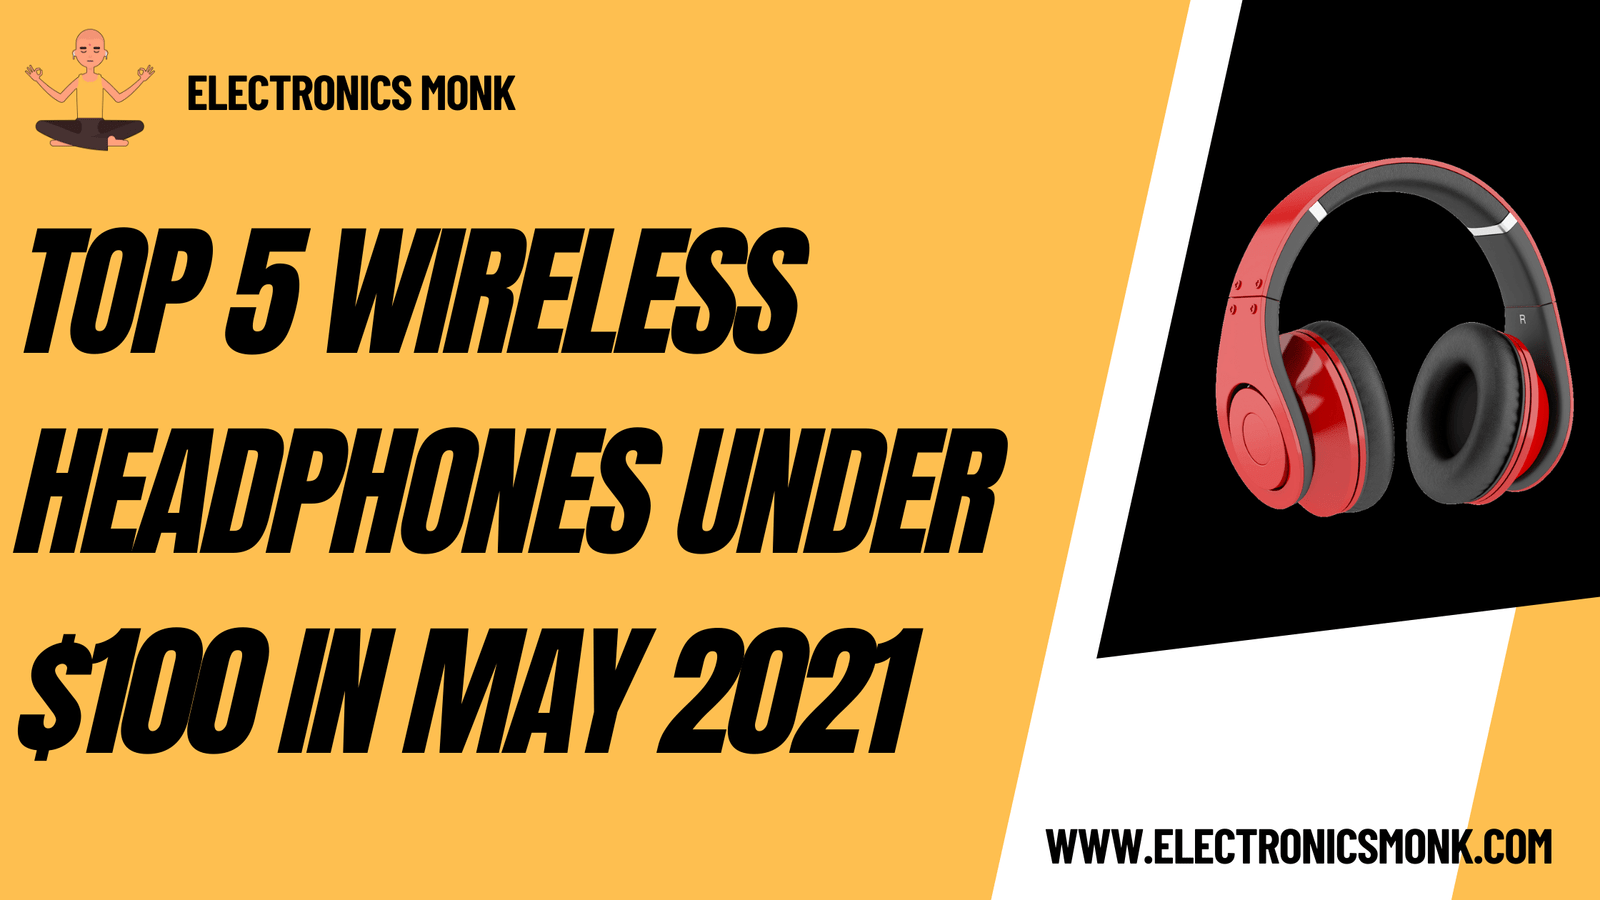 Top 5 wireless headphones under $100 in May 2021